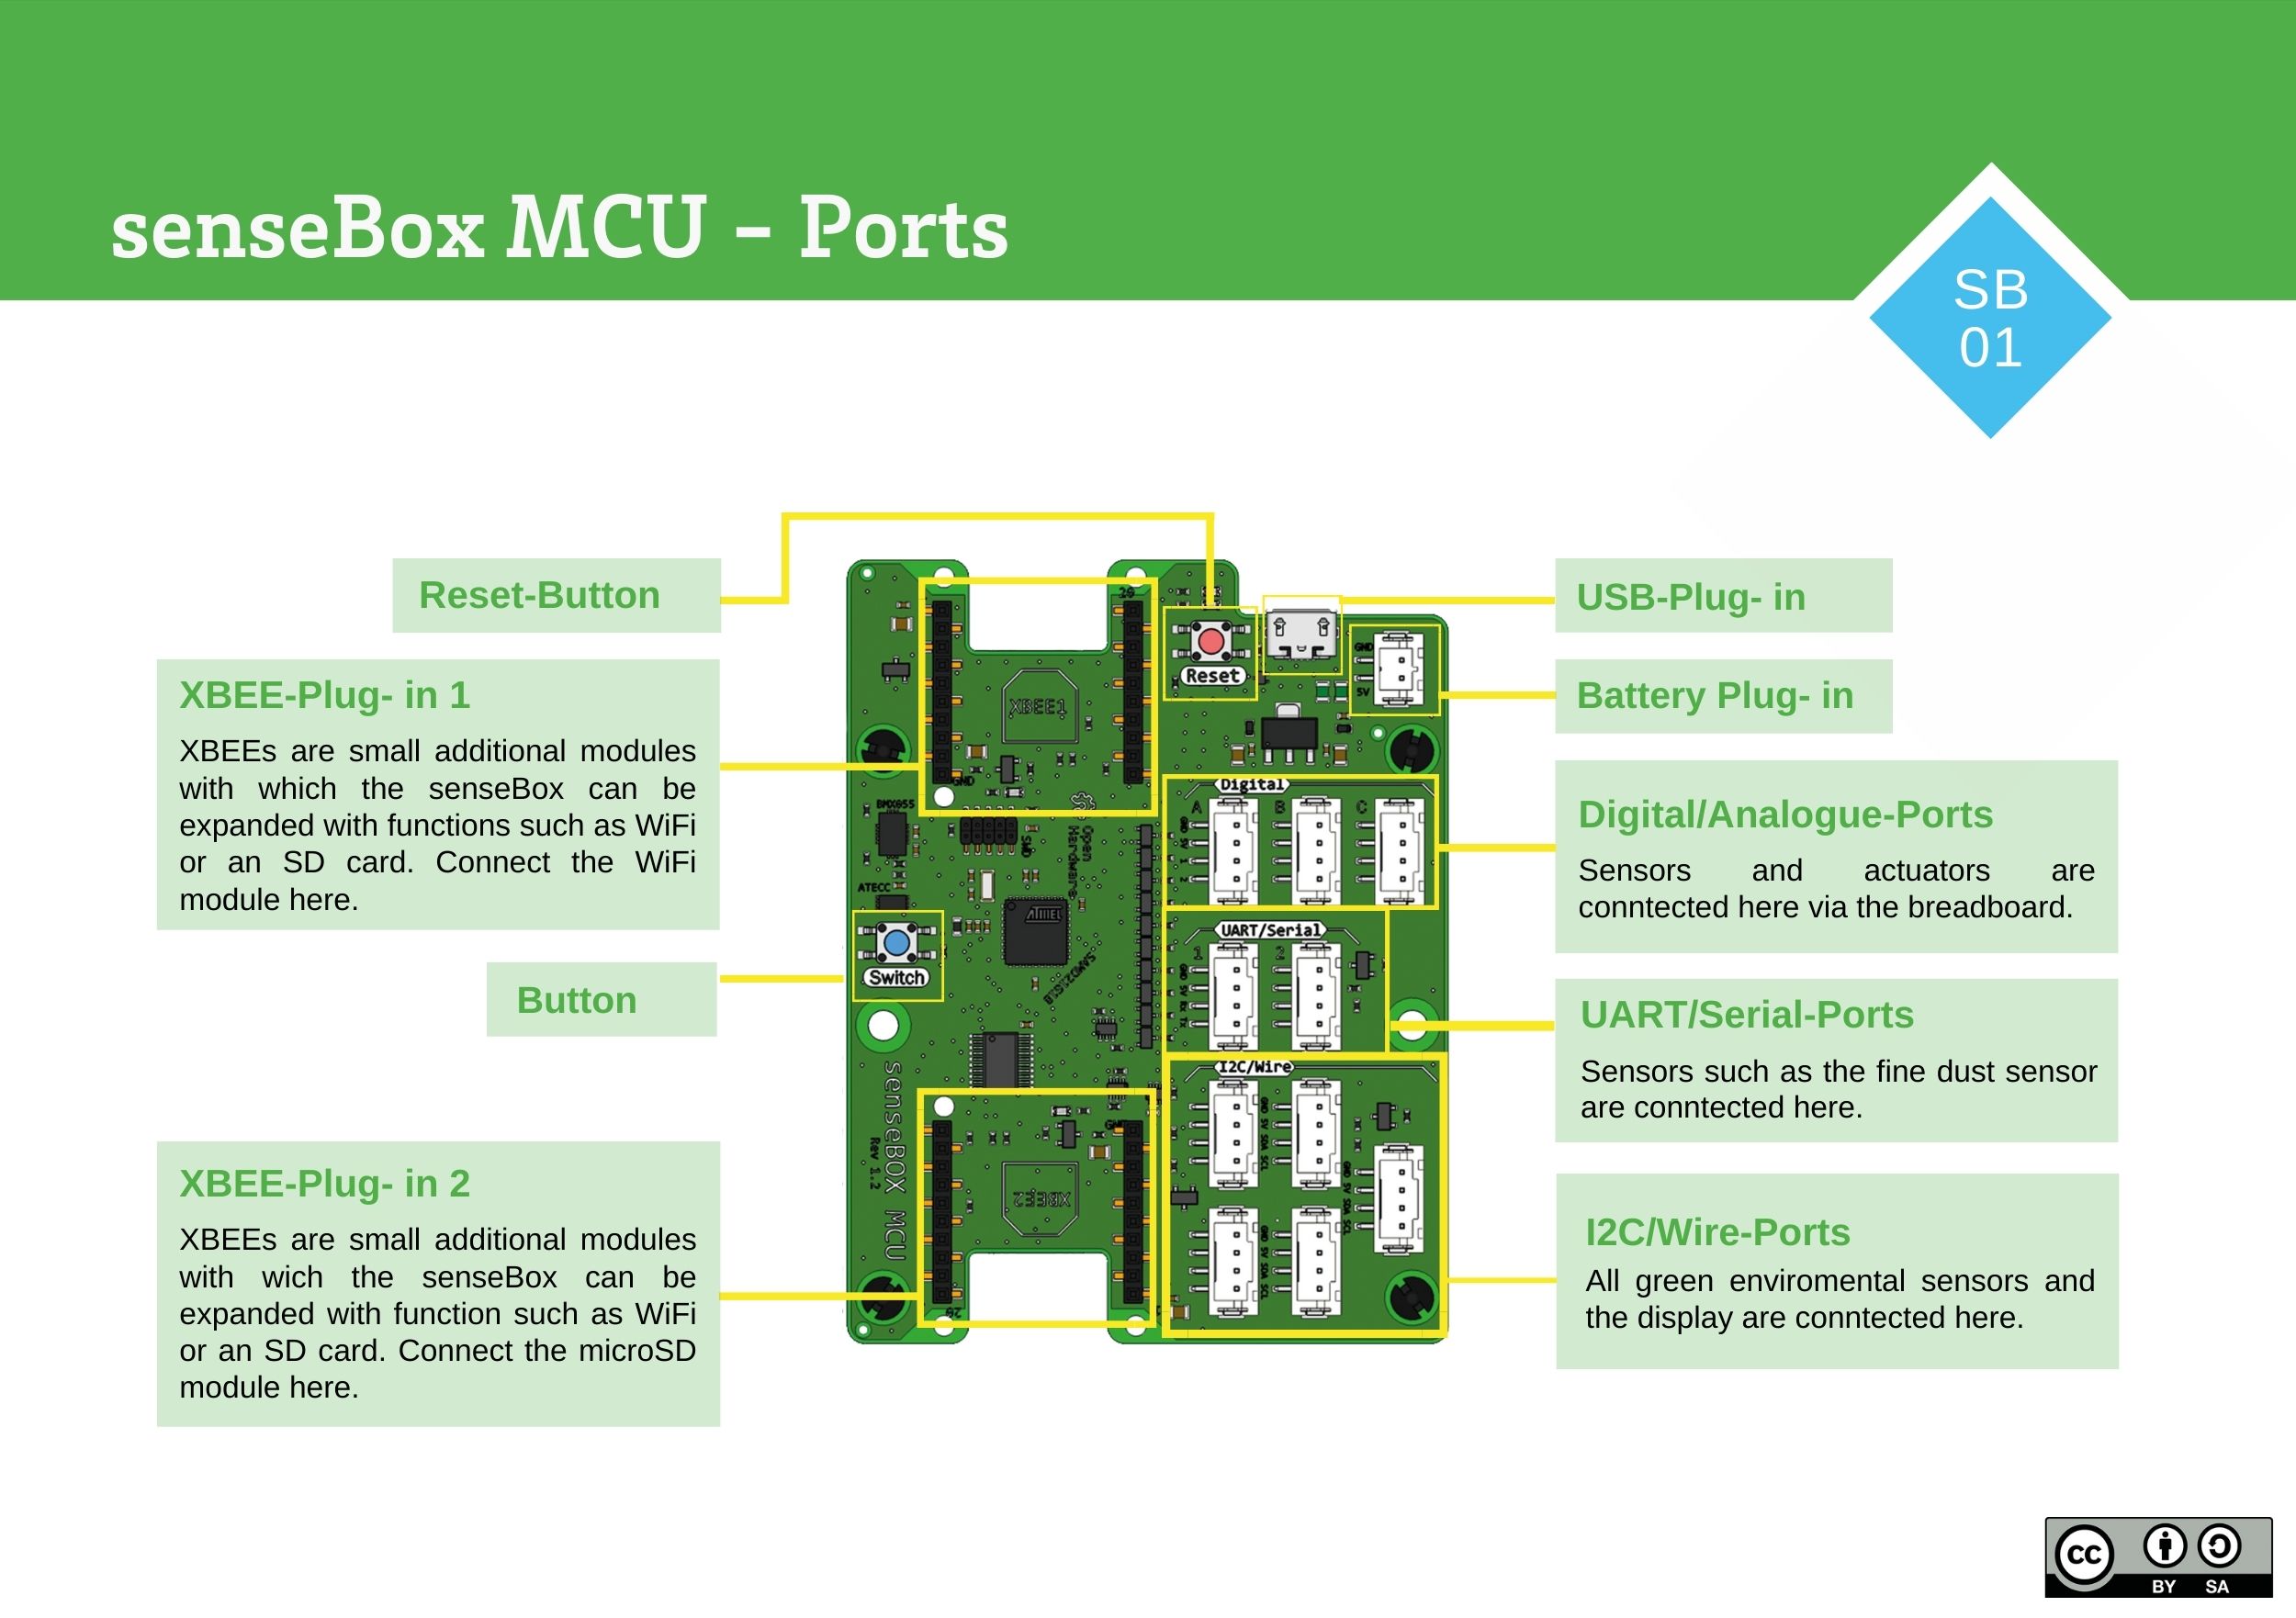 senseBox MCU - Overview